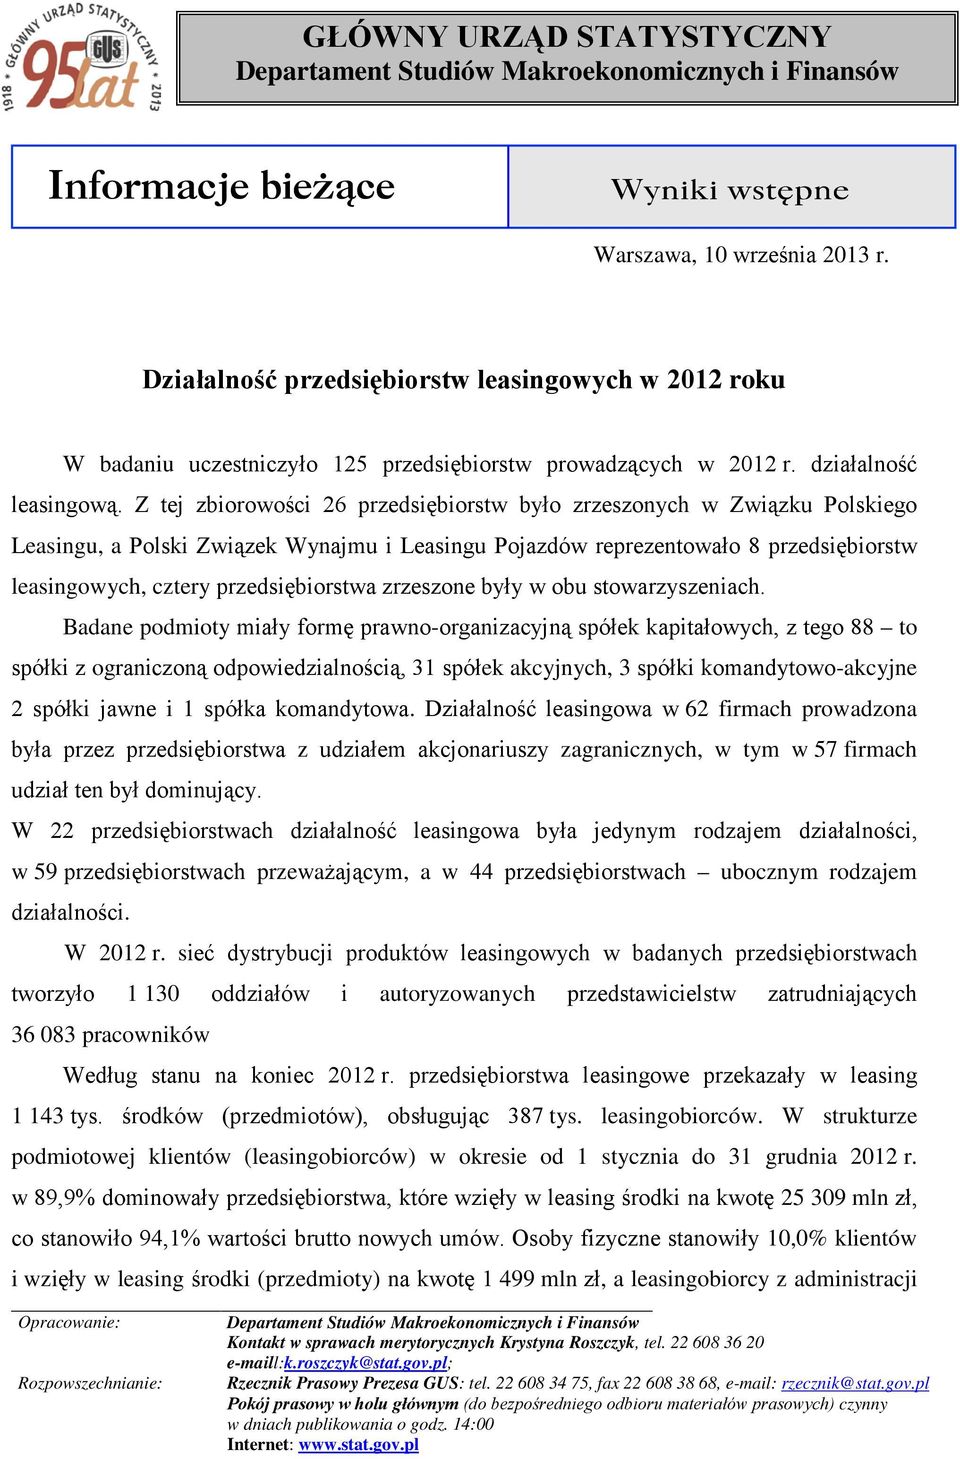 Z tej zbiorowości 26 przedsiębiorstw było zrzeszonych w Związku Polskiego Leasingu, a Polski Związek Wynajmu i Leasingu Pojazdów reprezentowało 8 przedsiębiorstw leasingowych, cztery przedsiębiorstwa